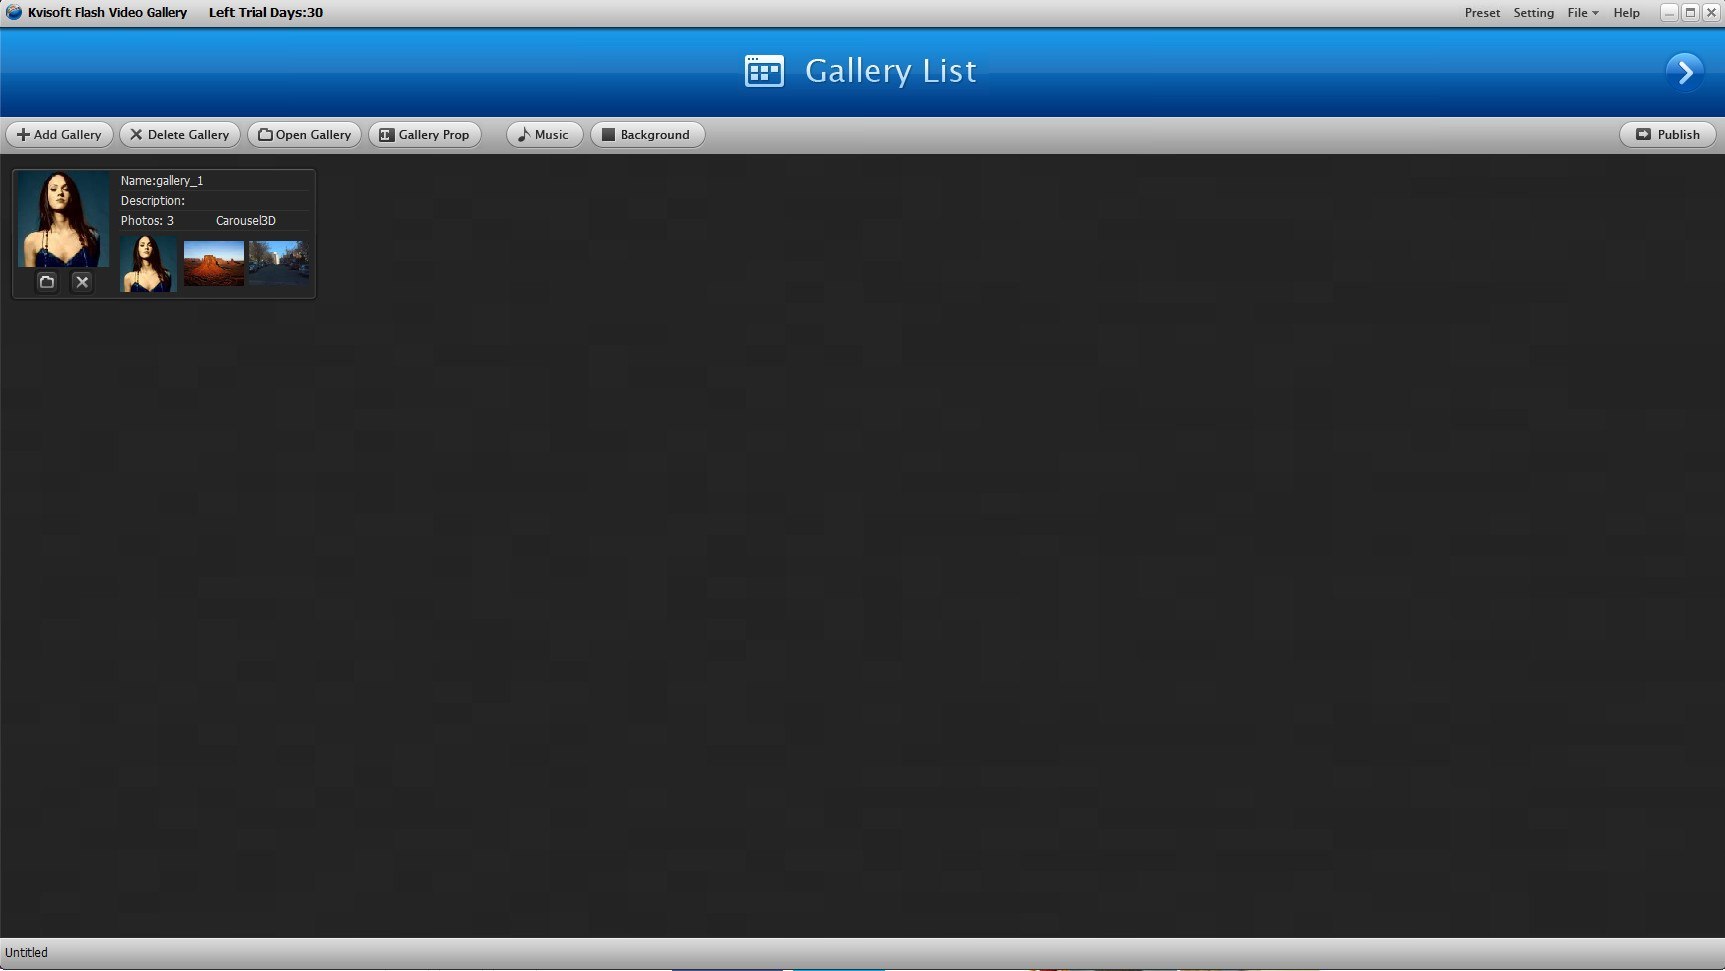 kvisoft flash slideshow designer serial number